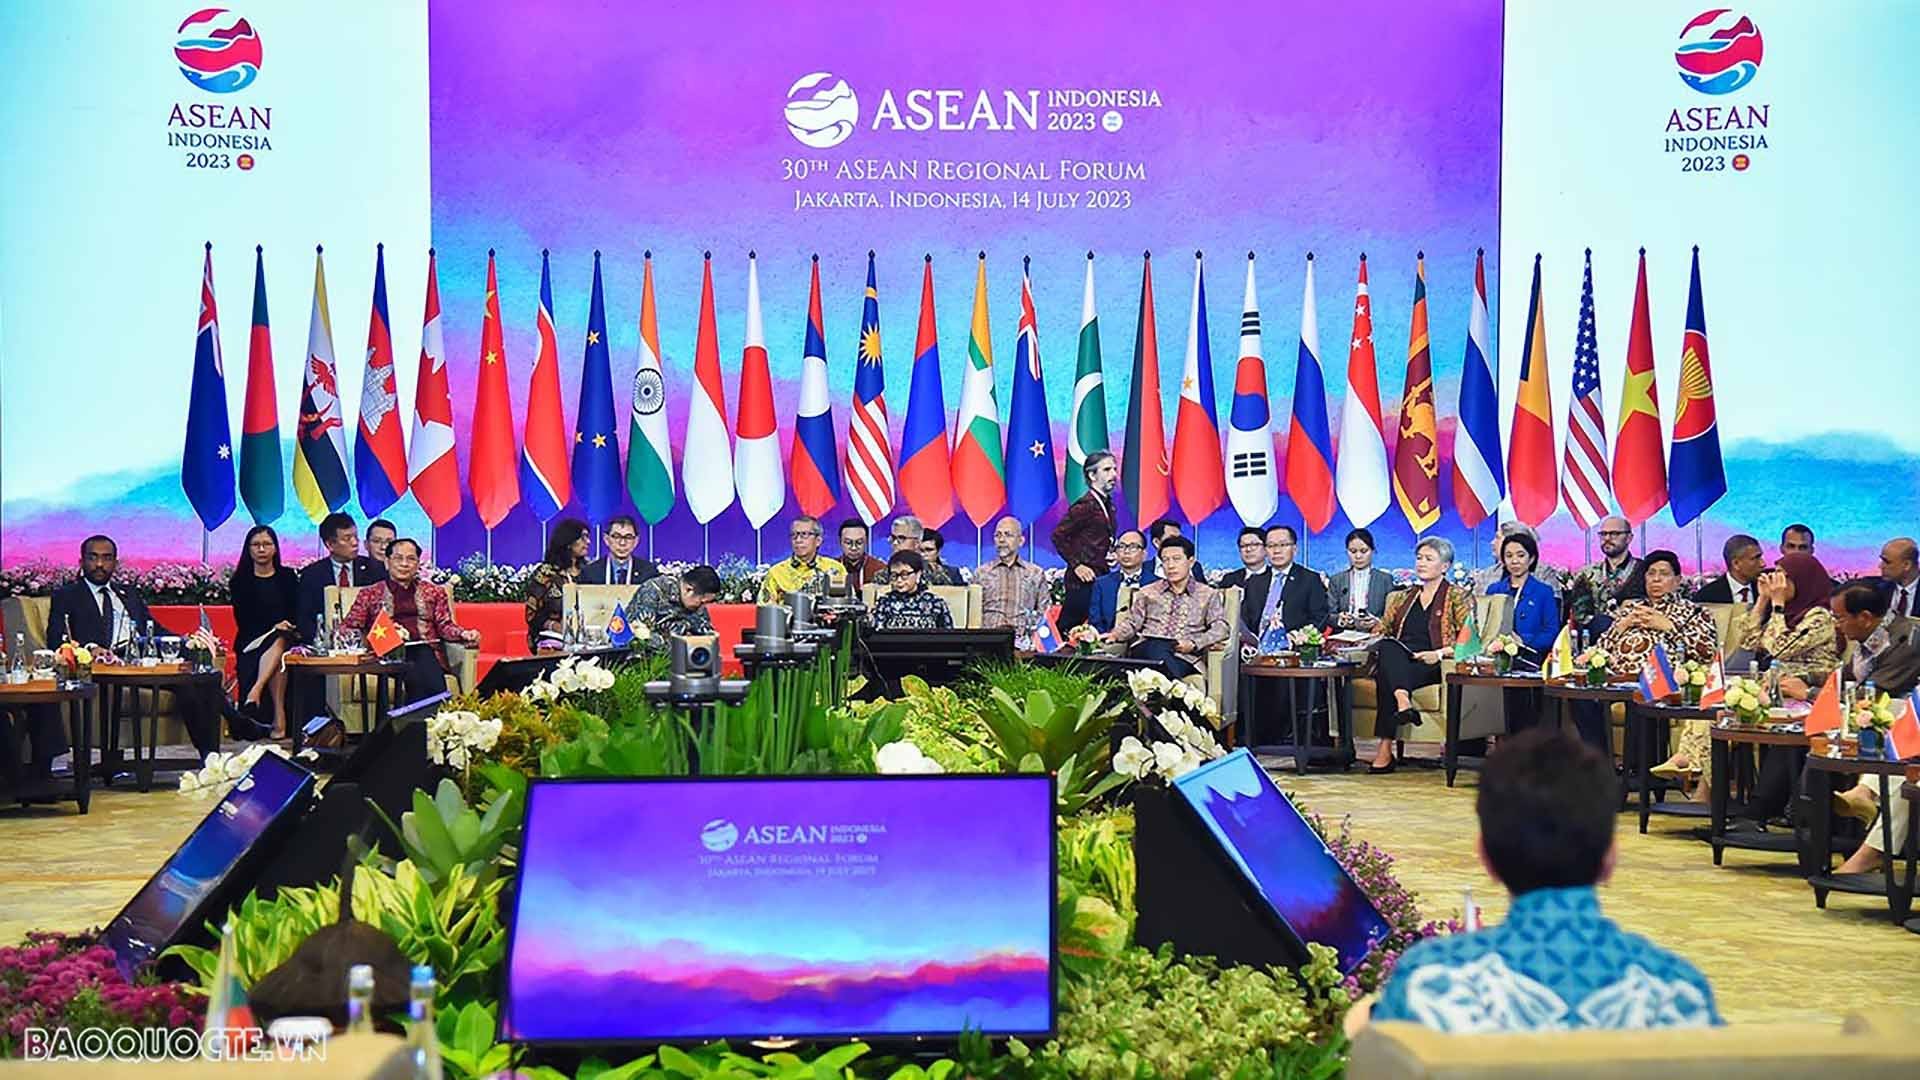 Bộ trưởng Ngoại giao Bùi Thanh Sơn cùng Ngoại trưởng các nước ASEAN và các nước Đối tác đối thoại  tham dự Diễn đàn khu vực ASEAN lần thứ 30, tại Jakarta, tháng 7/2023. (Ảnh: Tuấn Anh)